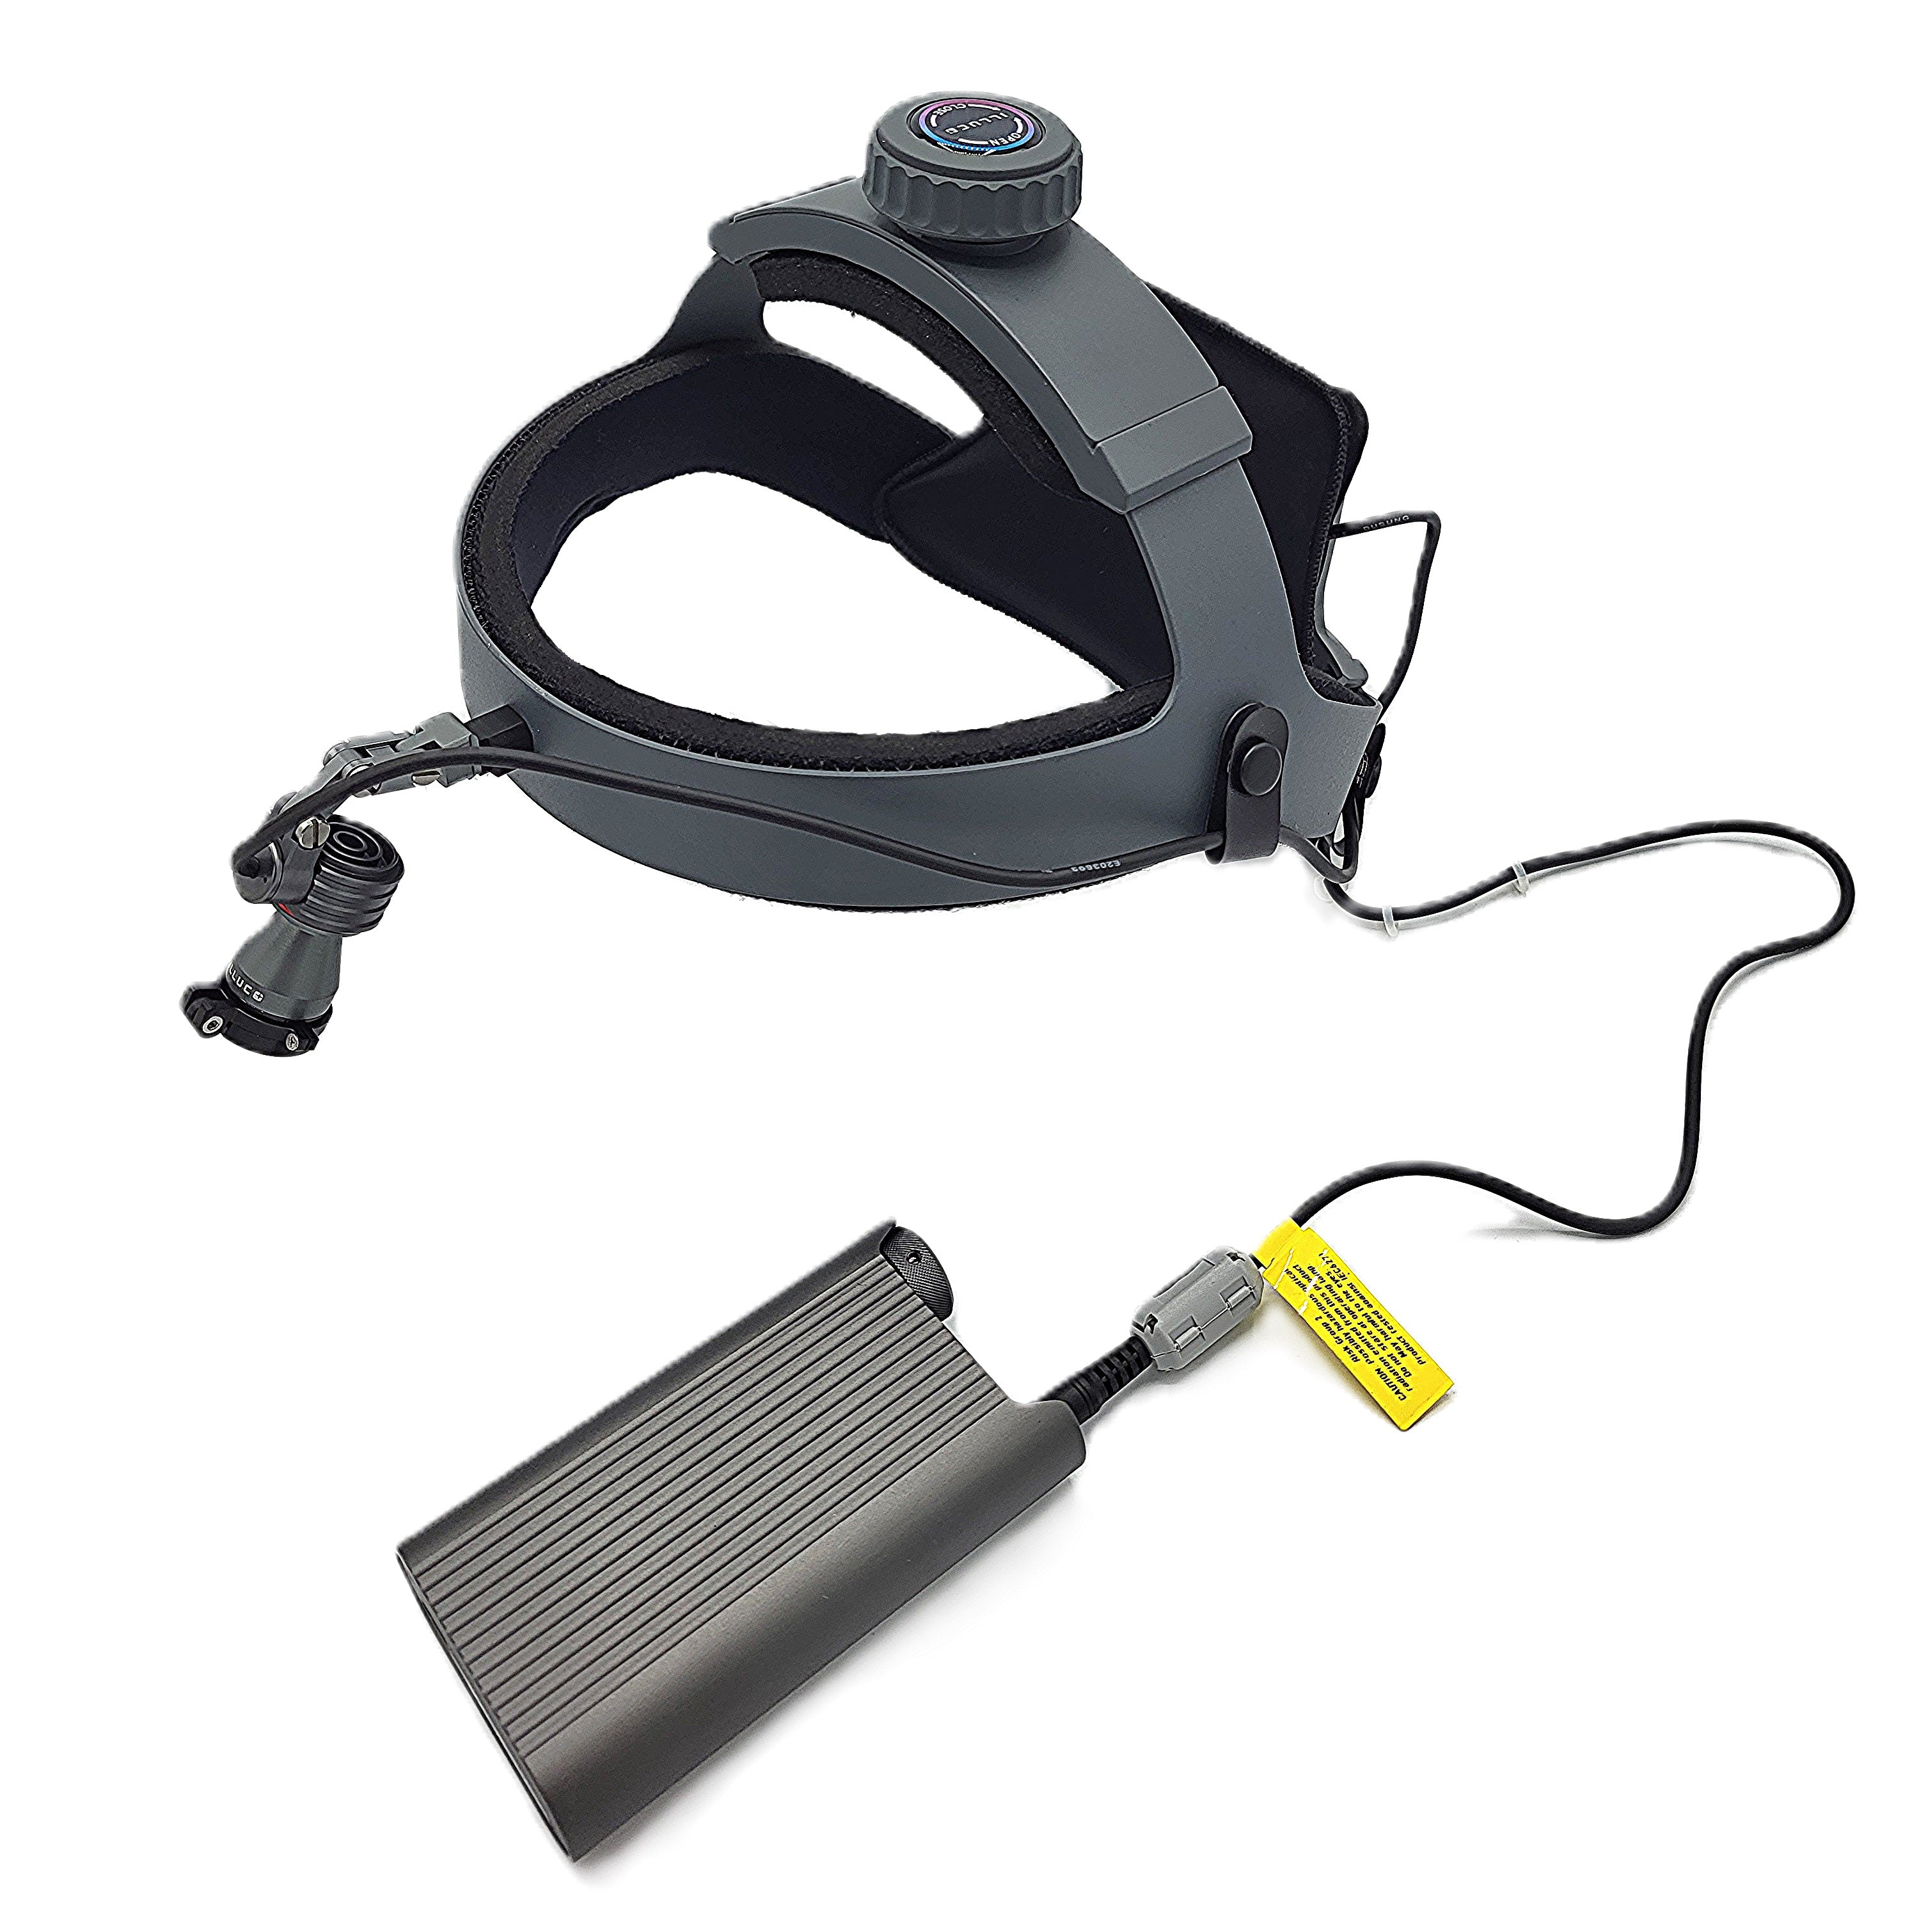 Medische hoofdlamp, batterij en kabel- Illuco IHL-1000 - Besurgical